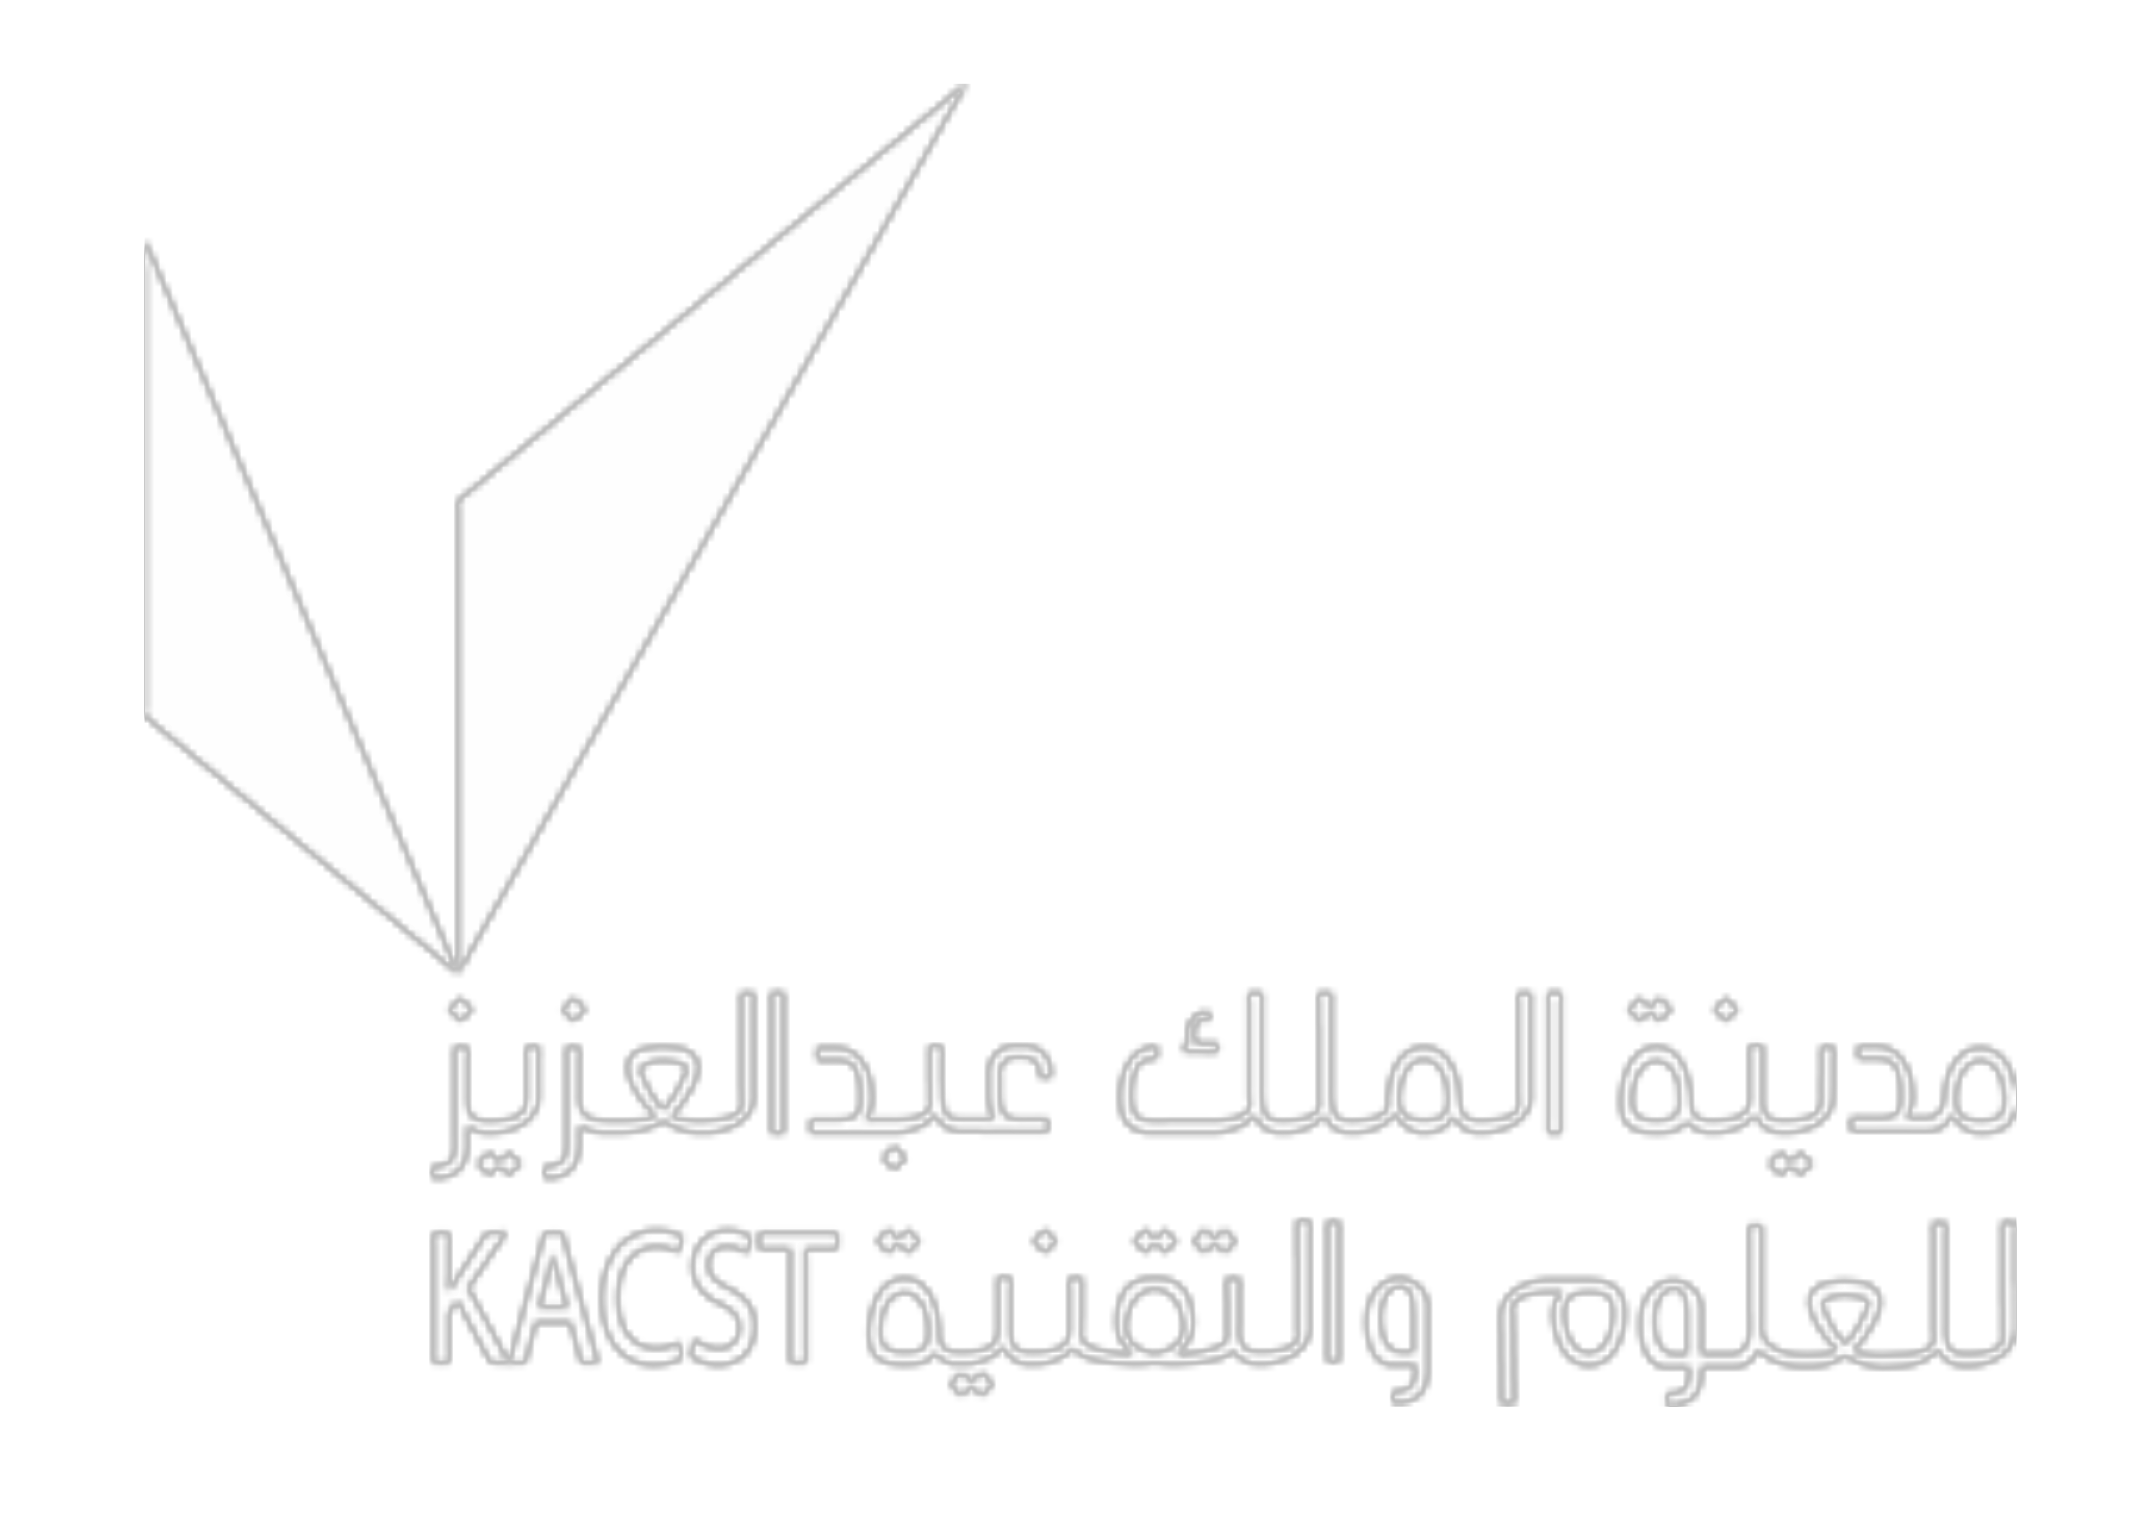 KACST logo